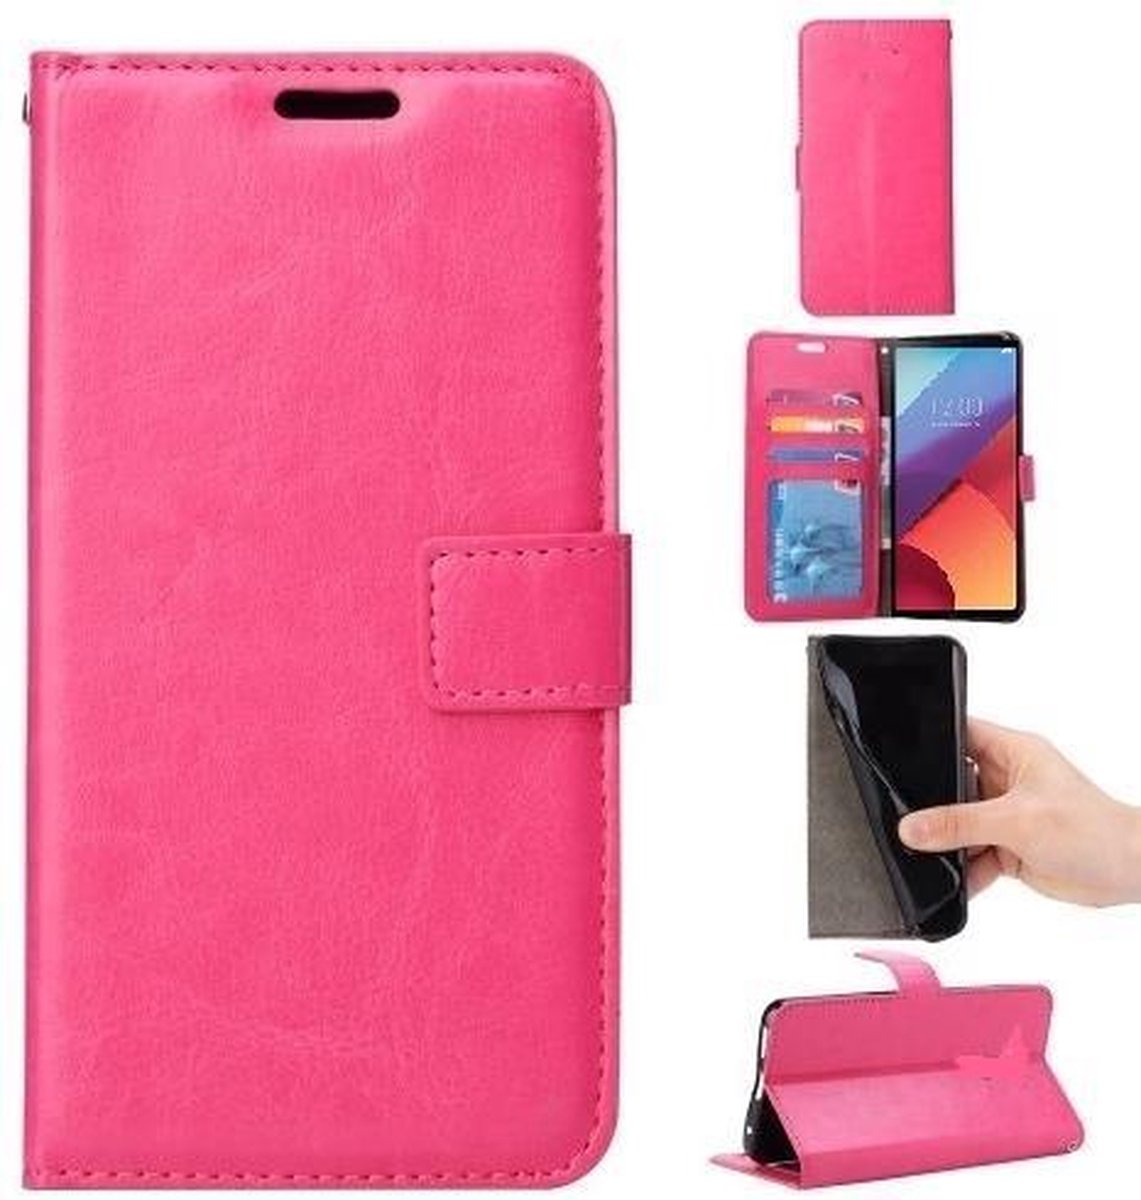 Huawei P10 Plus portemonnee hoesje - roze